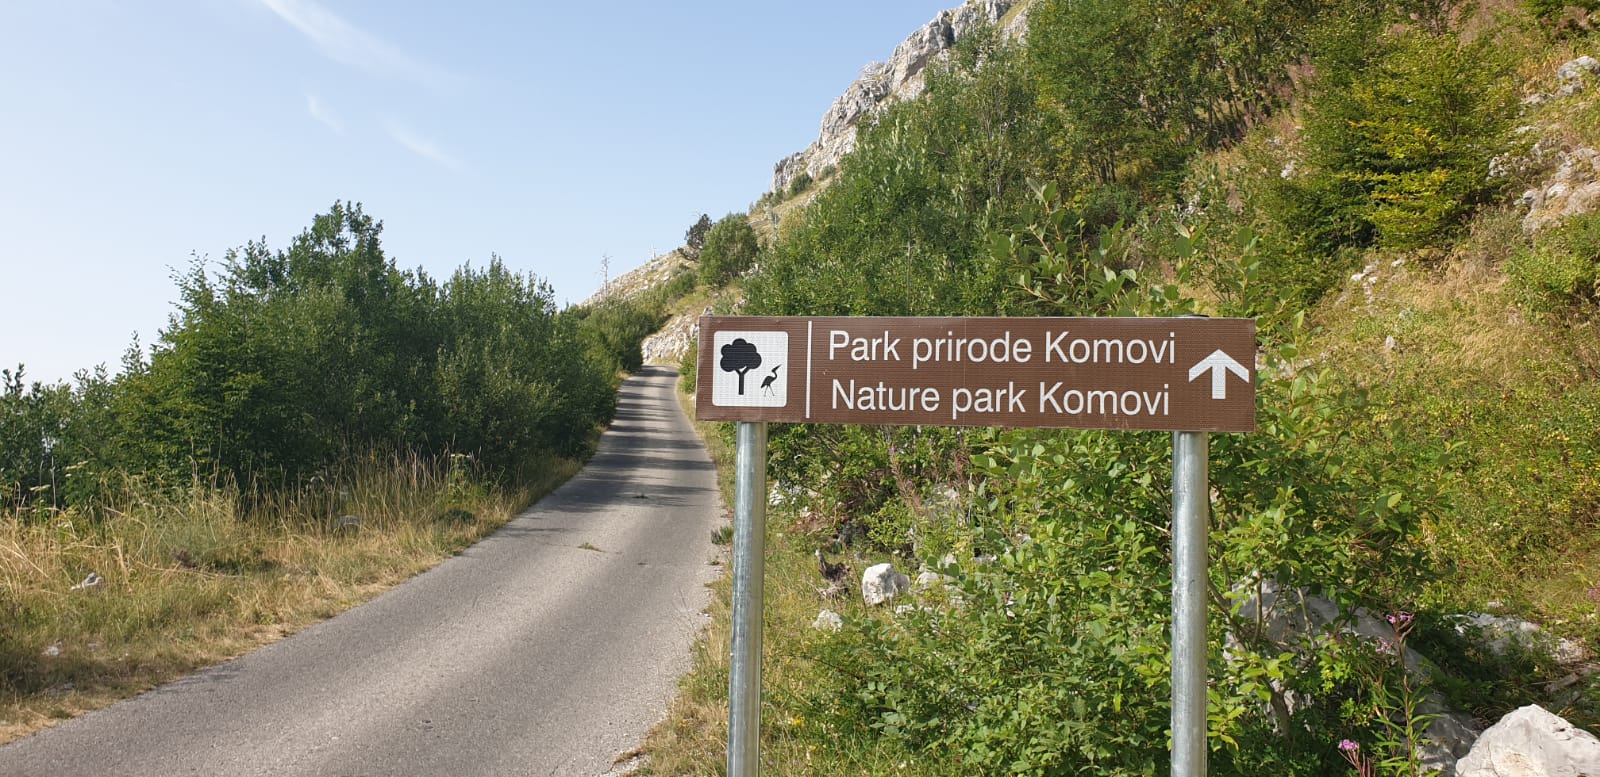 Postavljena saobraćajna signalizacija i info table za Park prirode Komovi